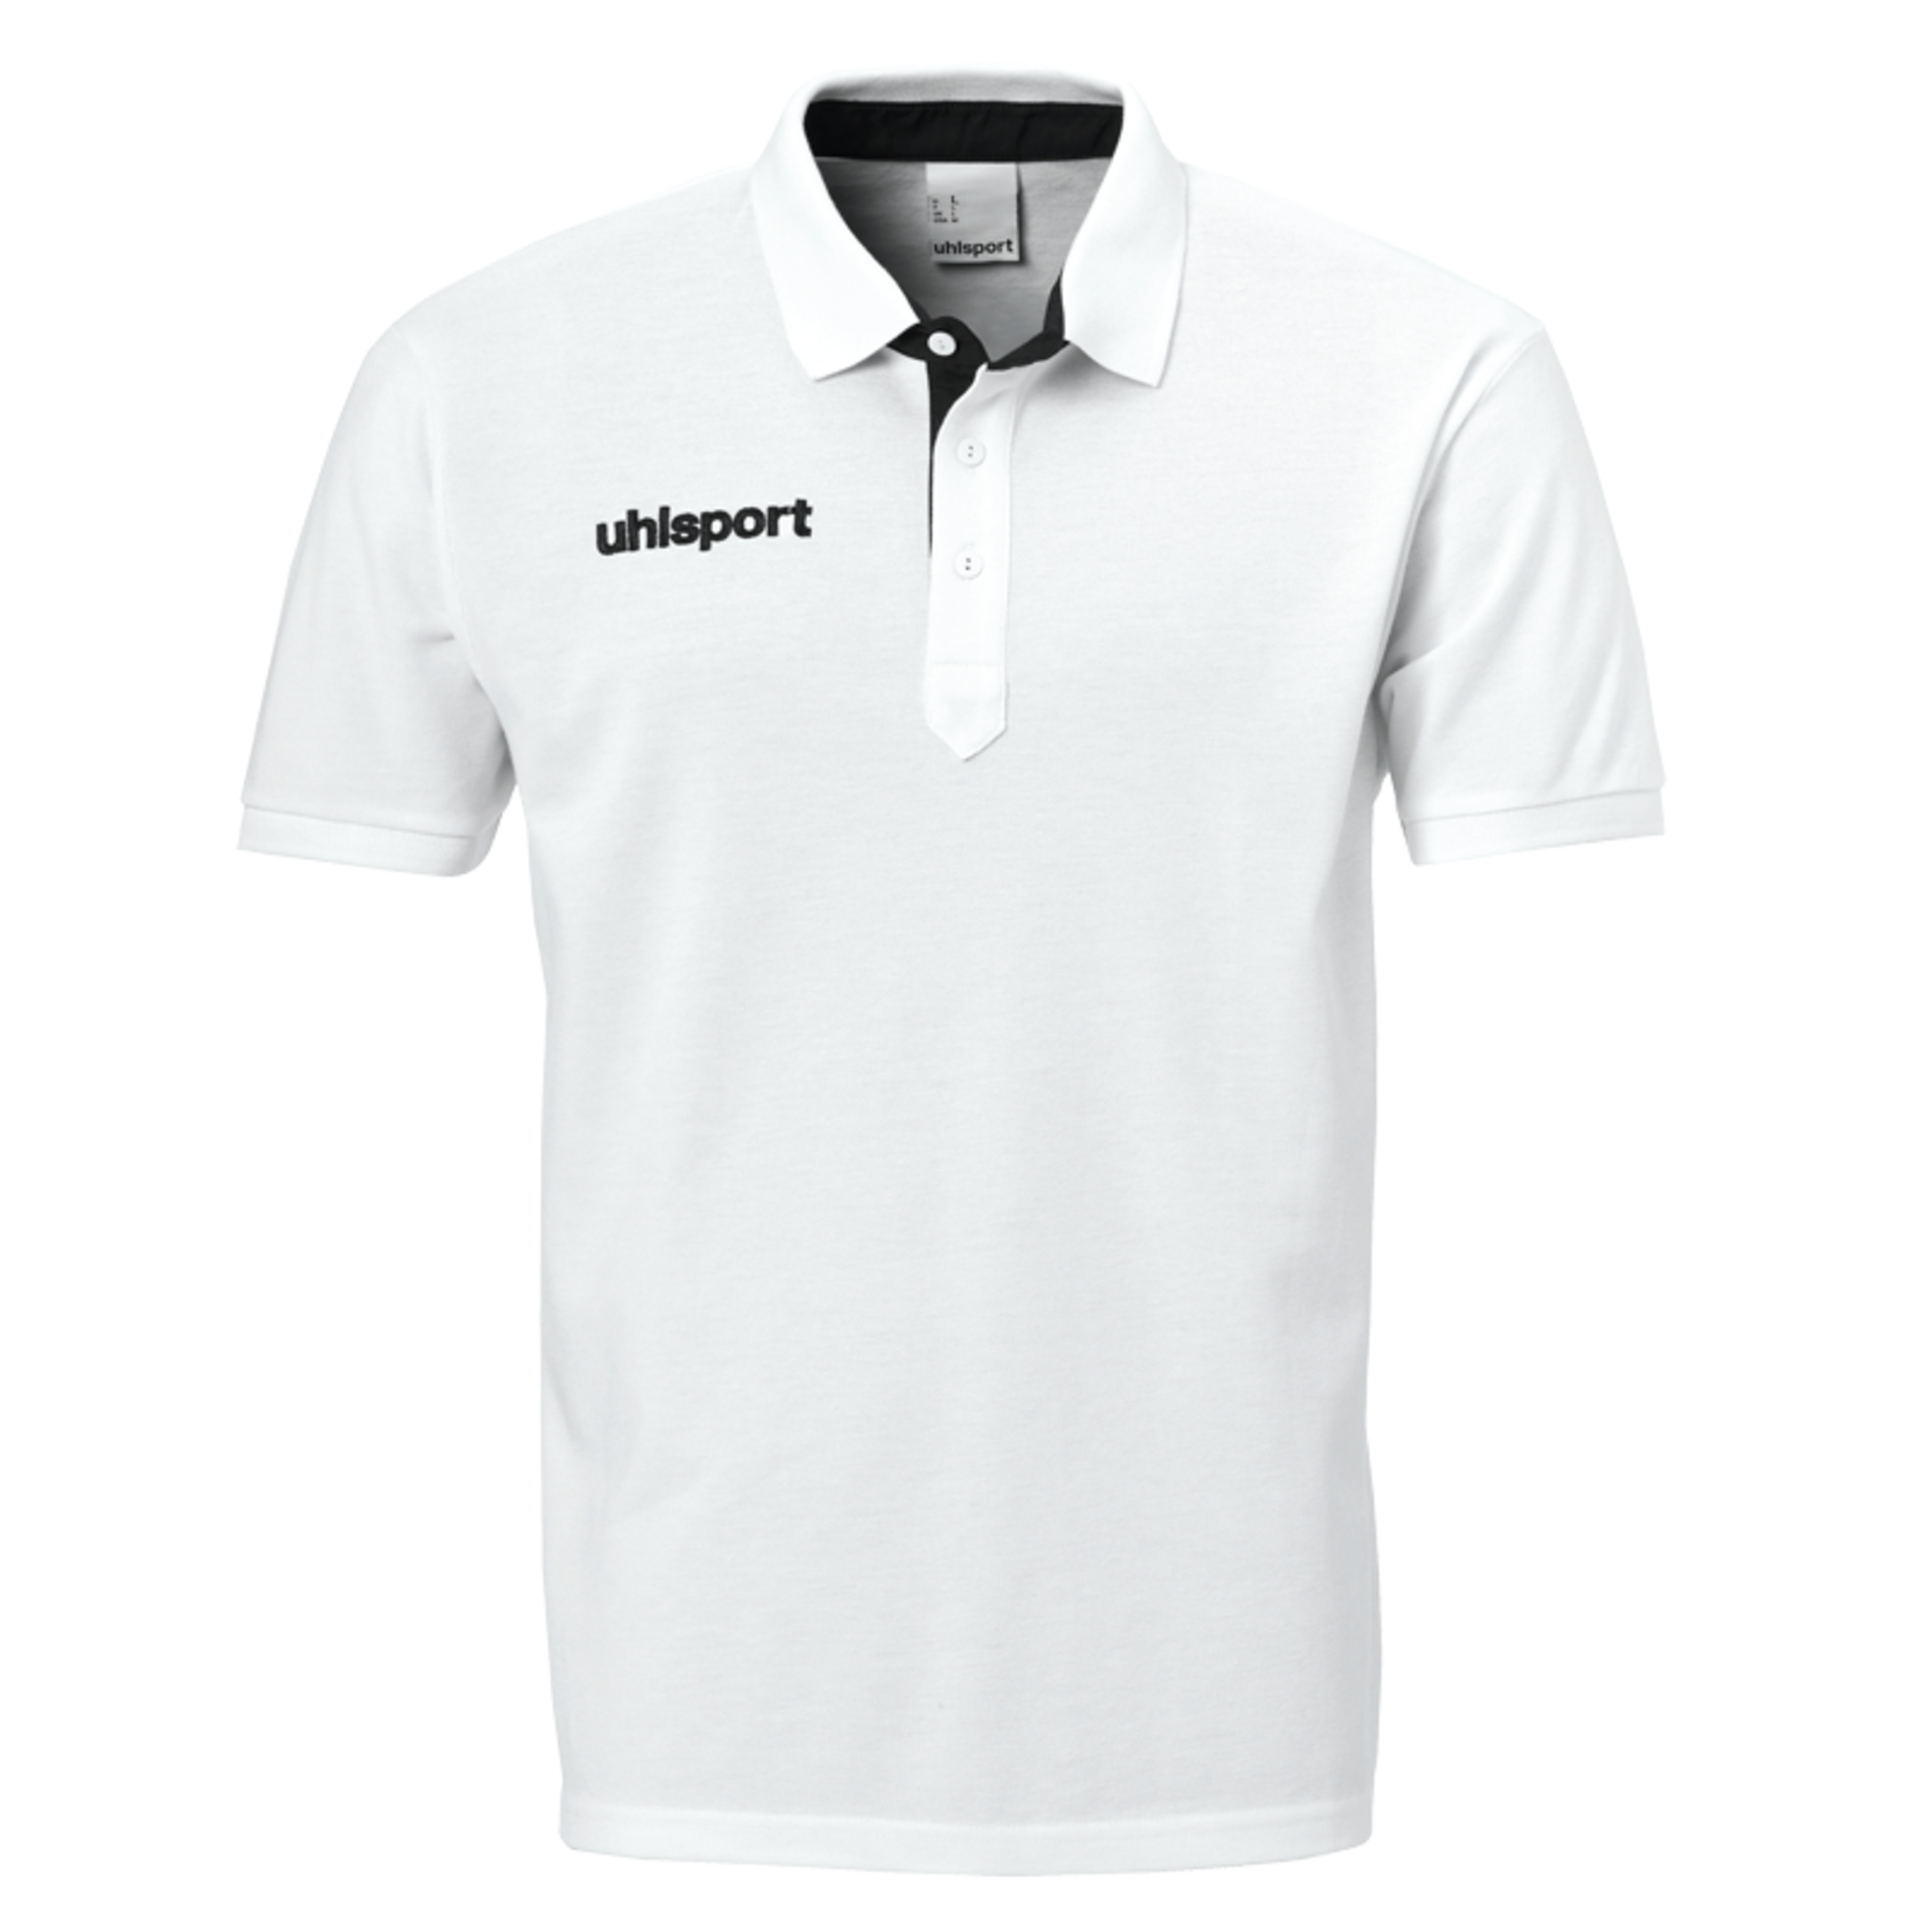 Essential Prime Polo Shirt Blanco/negro Uhlsport